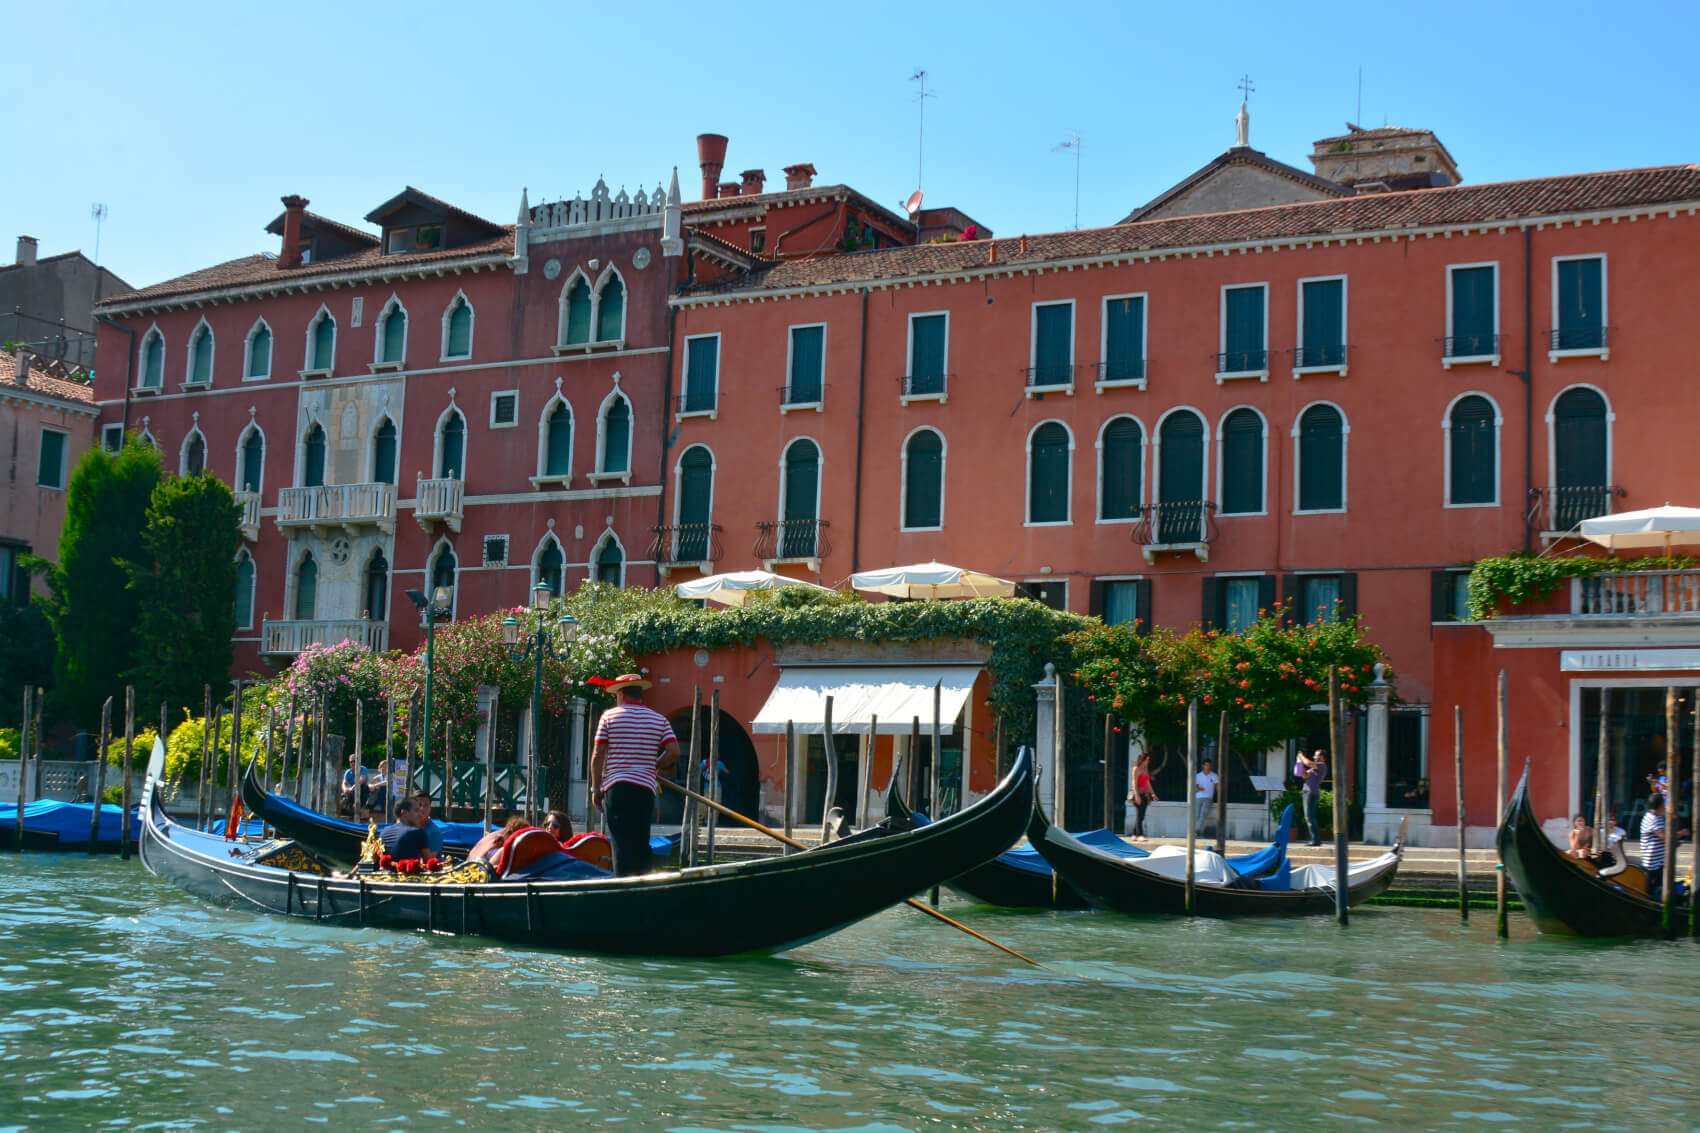 Italie - Les Lacs Italiens et Venise - MESLAY DU MAINE